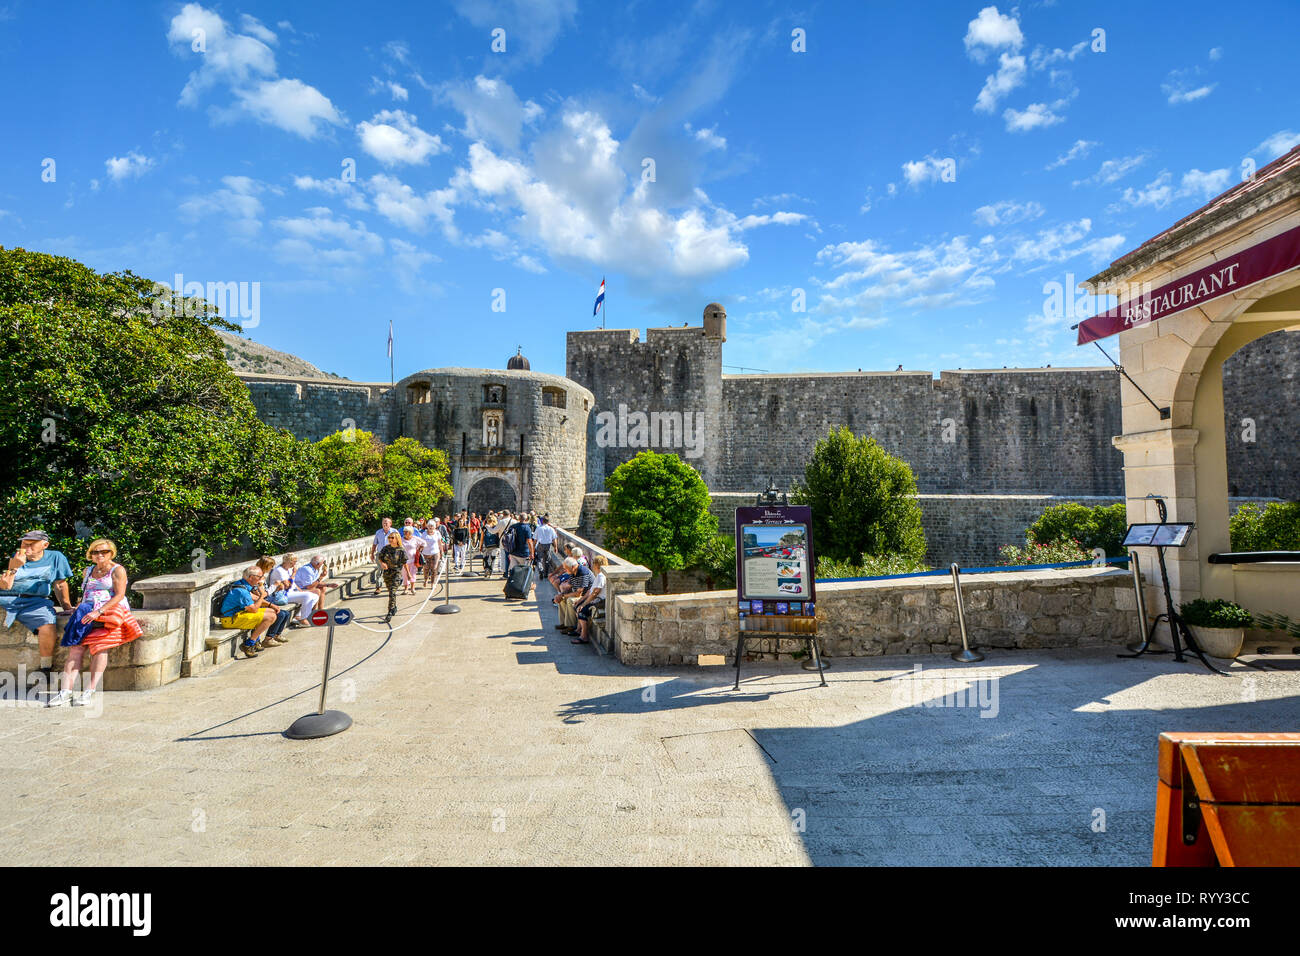 La ciudad exterior Puerta Pile y puente de piedra que conduce a la antigua ciudad amurallada de Dubrovnik, Croacia con turistas disfrutando de un día soleado de verano Foto de stock